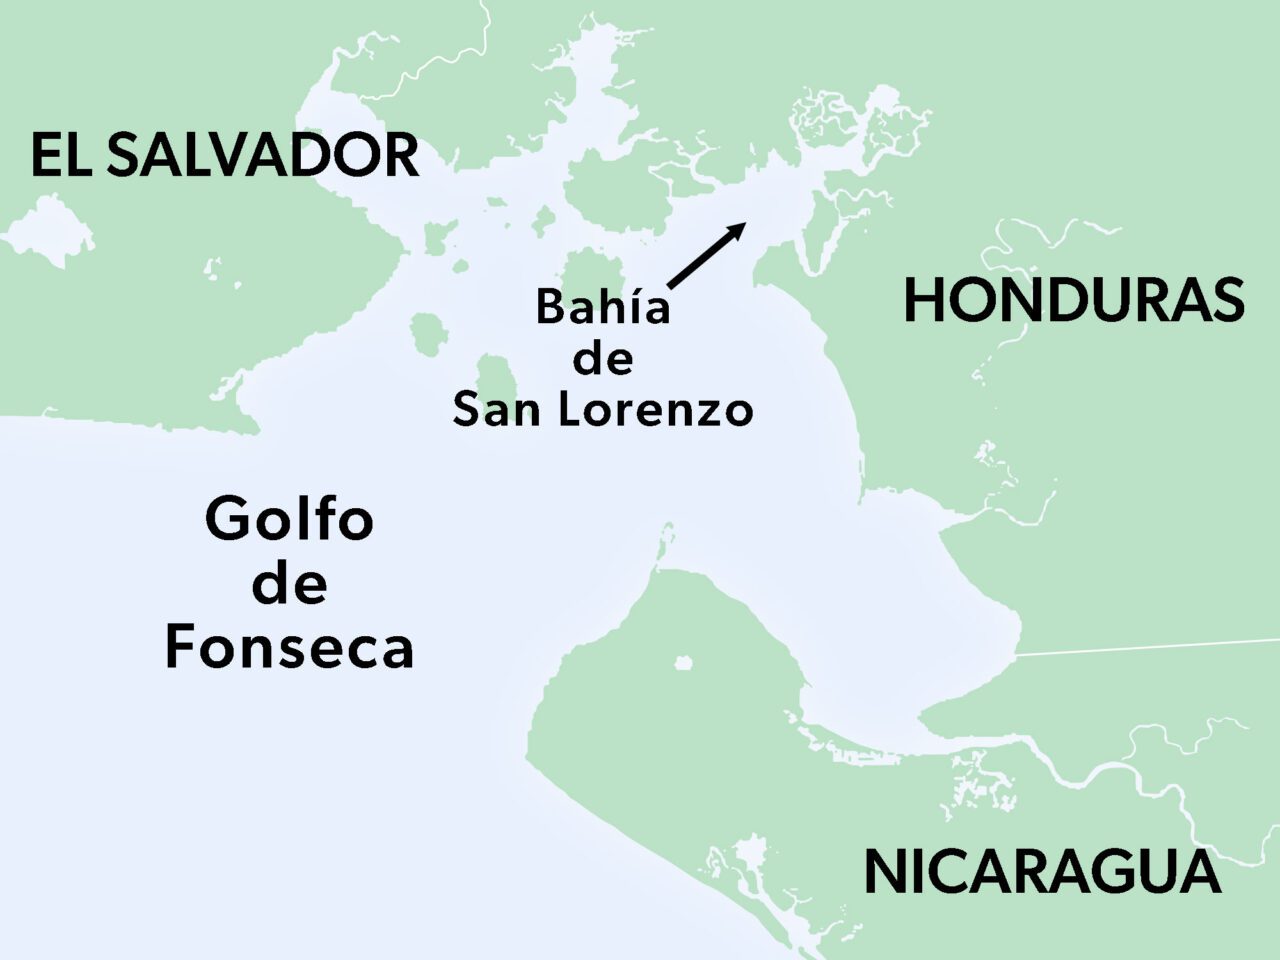 Primer plano del Golfo de Fonseca con la Bahía de San Lorenzo indicada. Los países cercanos señalados son El Salvador, Honduras y Nicaragua.